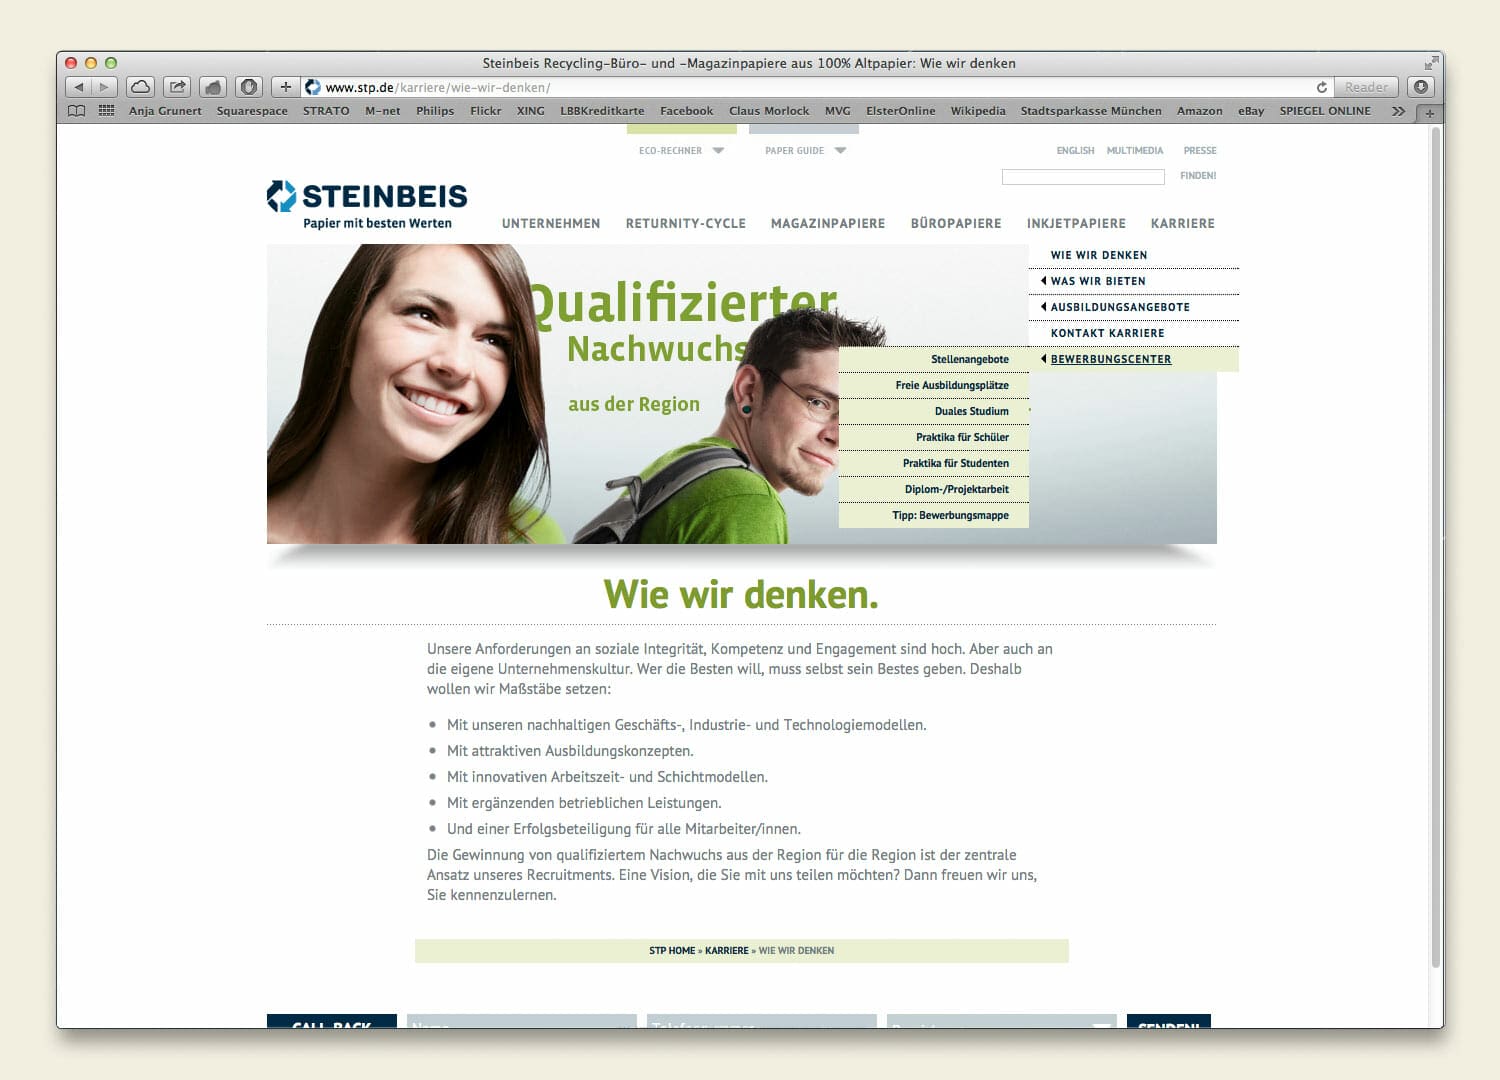 Steinbeis Papier Website 2012 Karriere